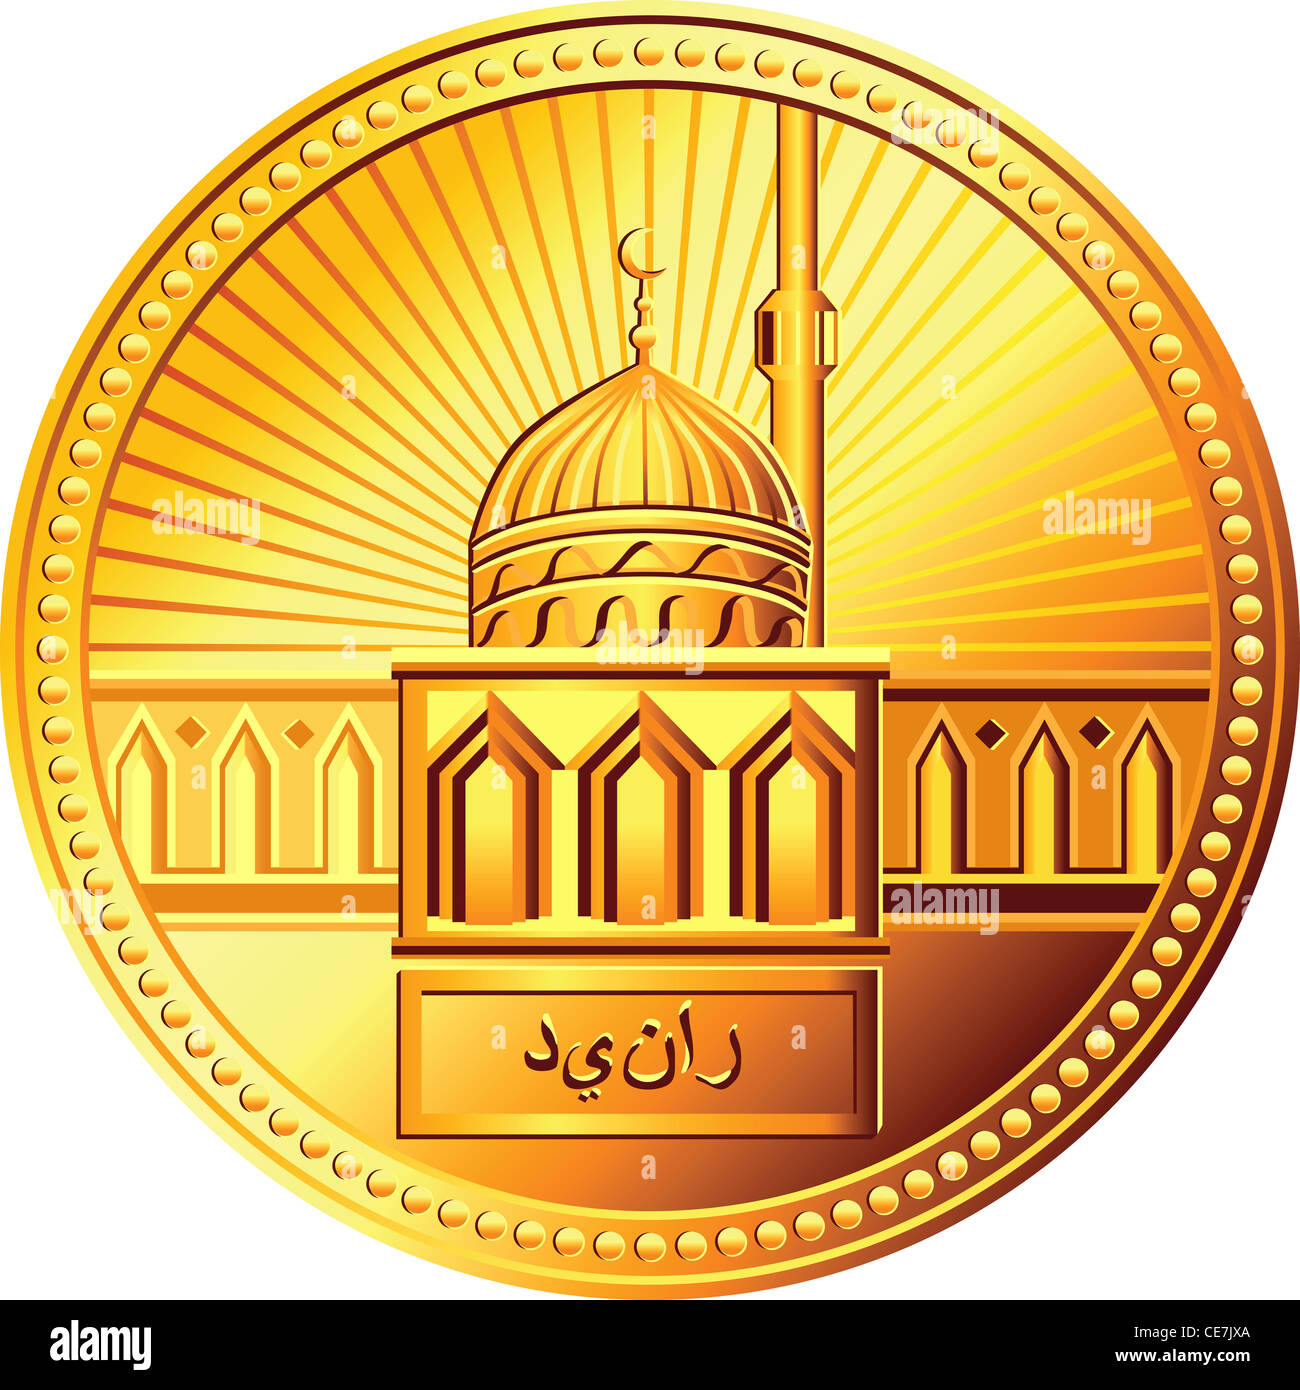 Pièce de monnaie dinar or arabe avec l'image de la mosquée contre le soleil levant Banque D'Images